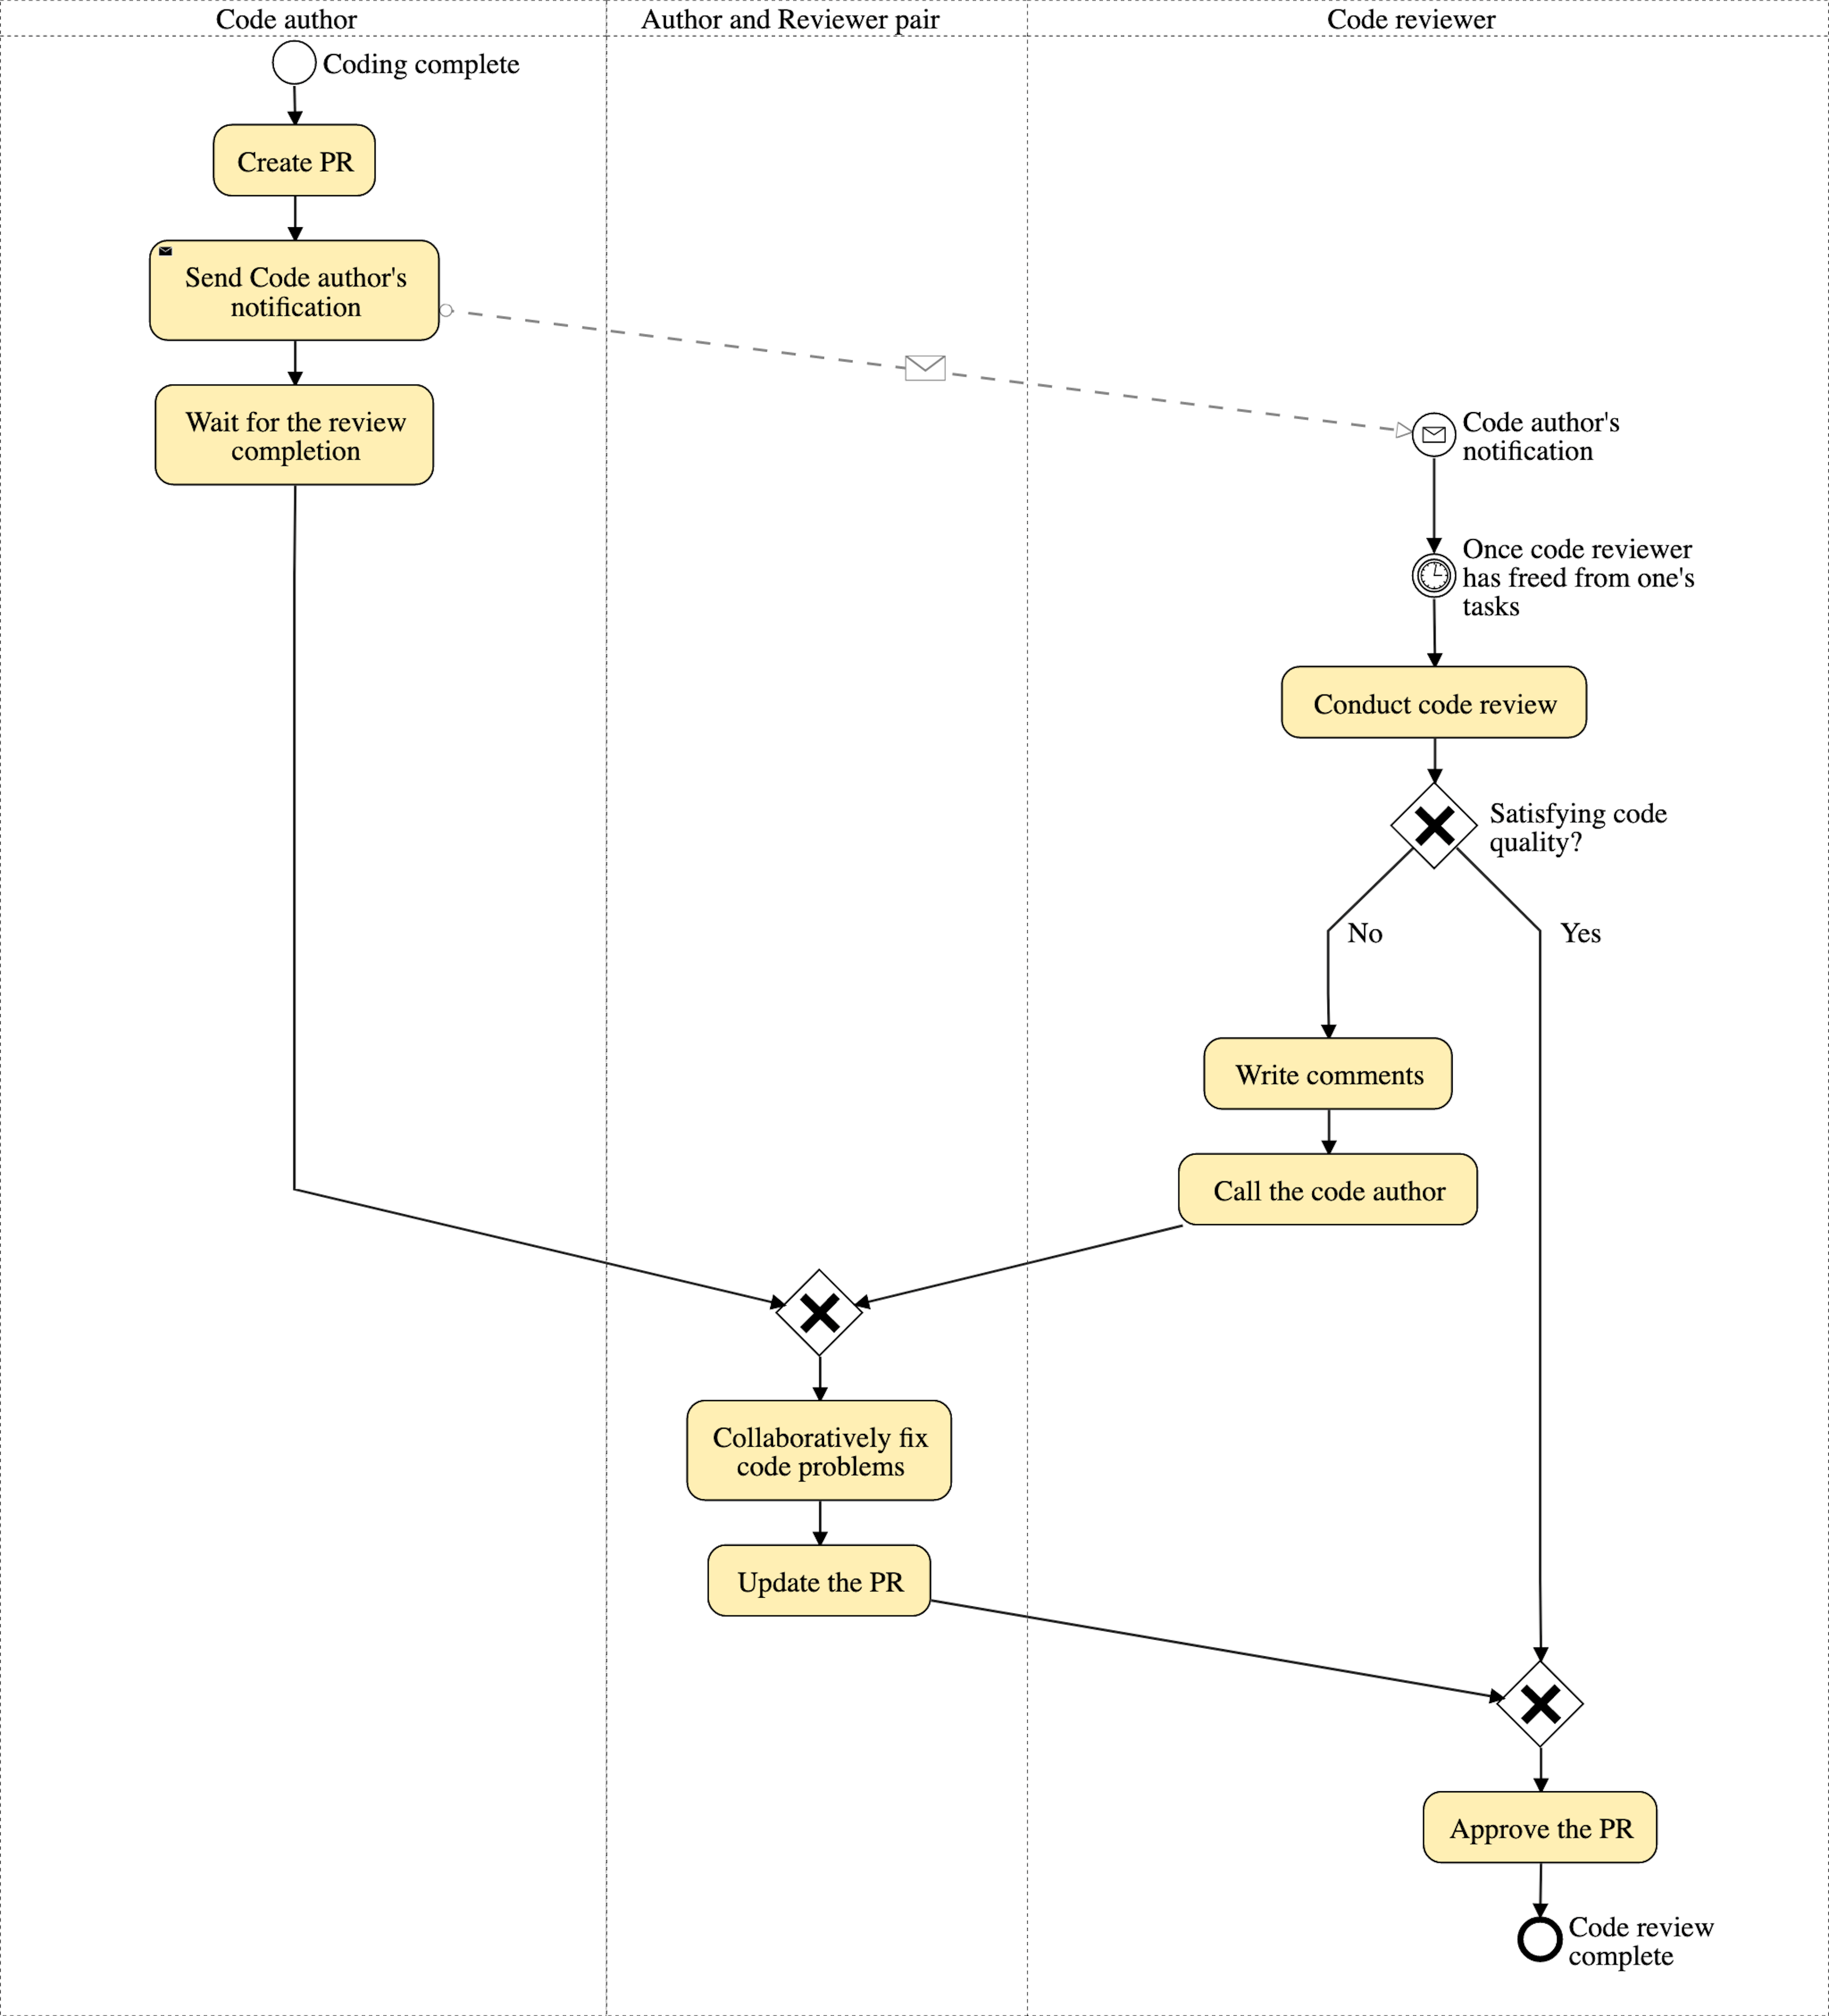 El diagrama de proceso de revisión de código propuesto